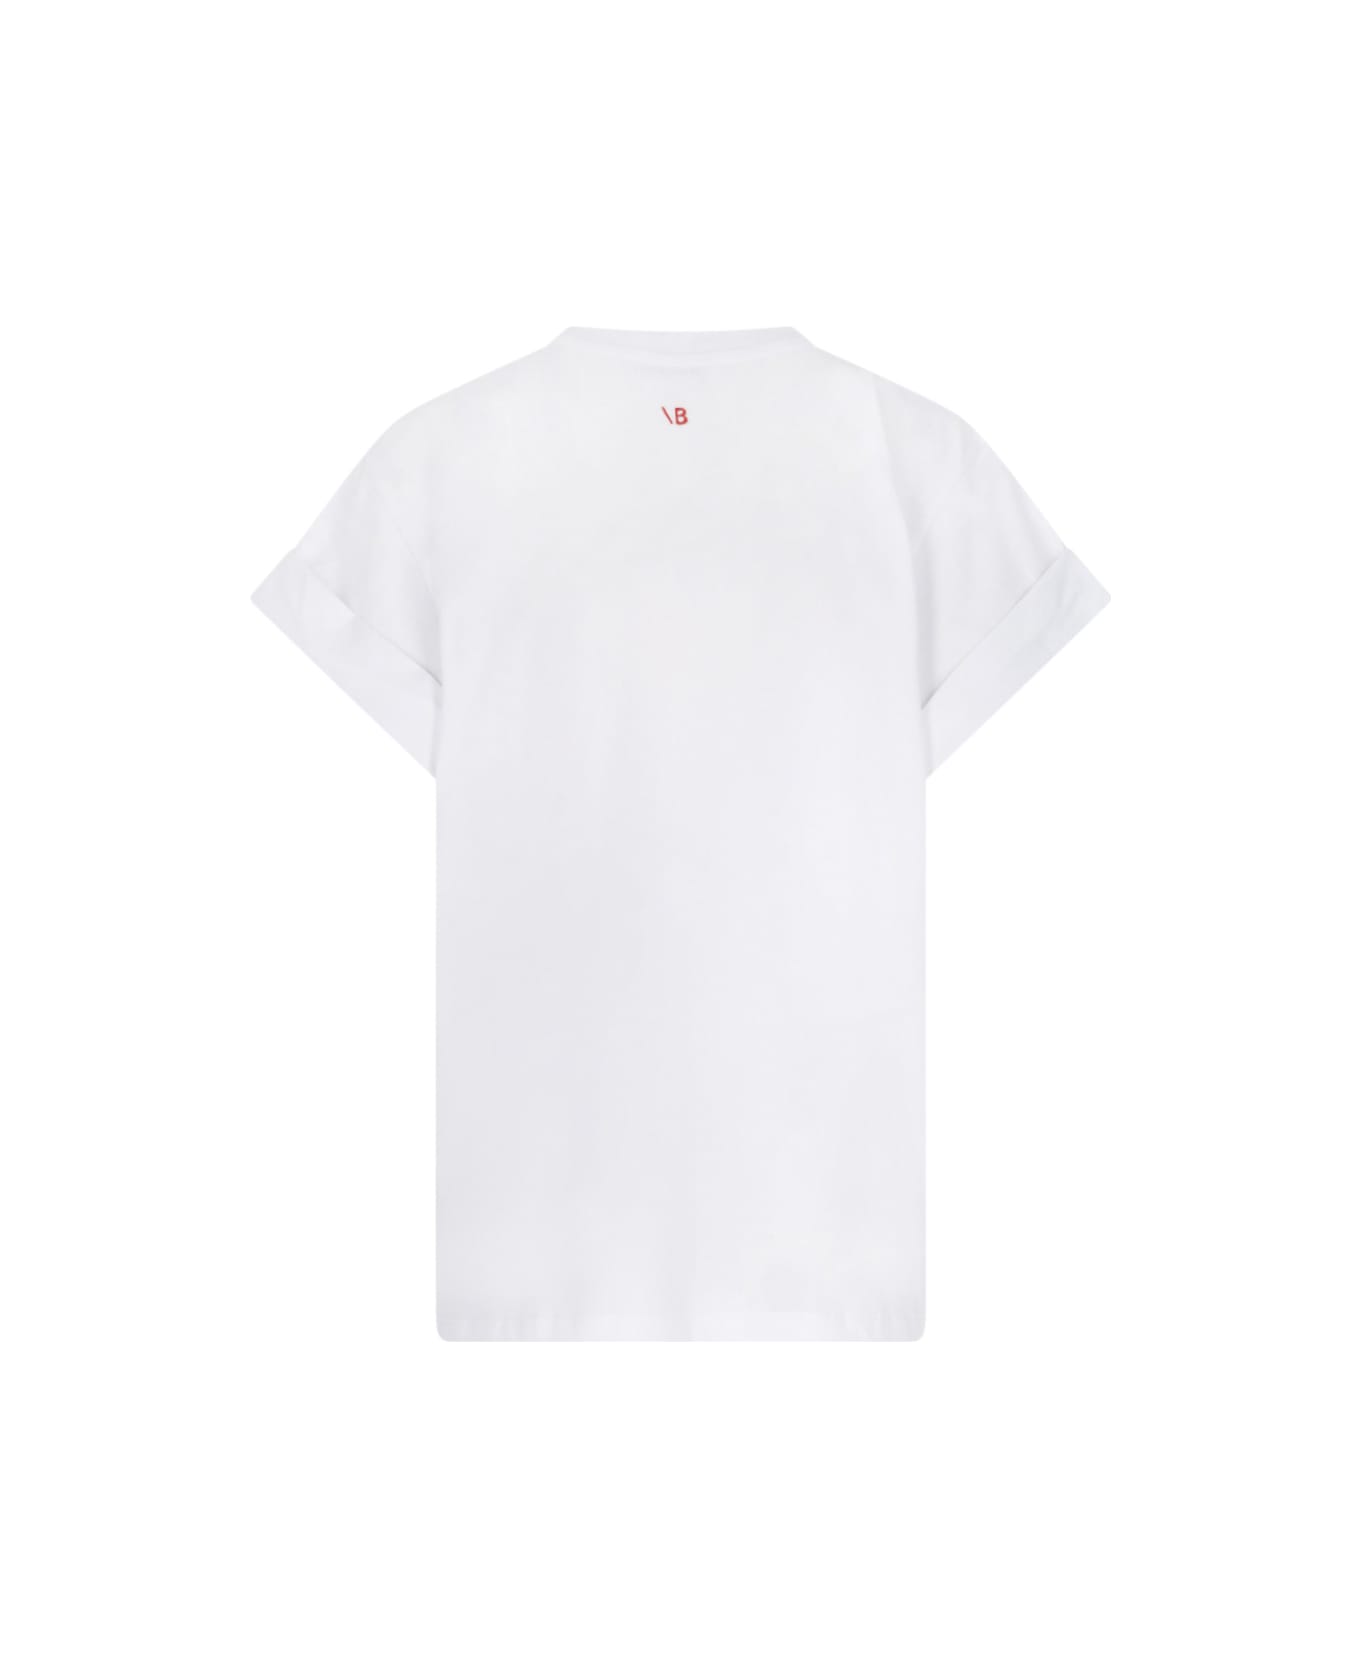 Victoria Beckham 'slogan Print' T-shirt - White Tシャツ